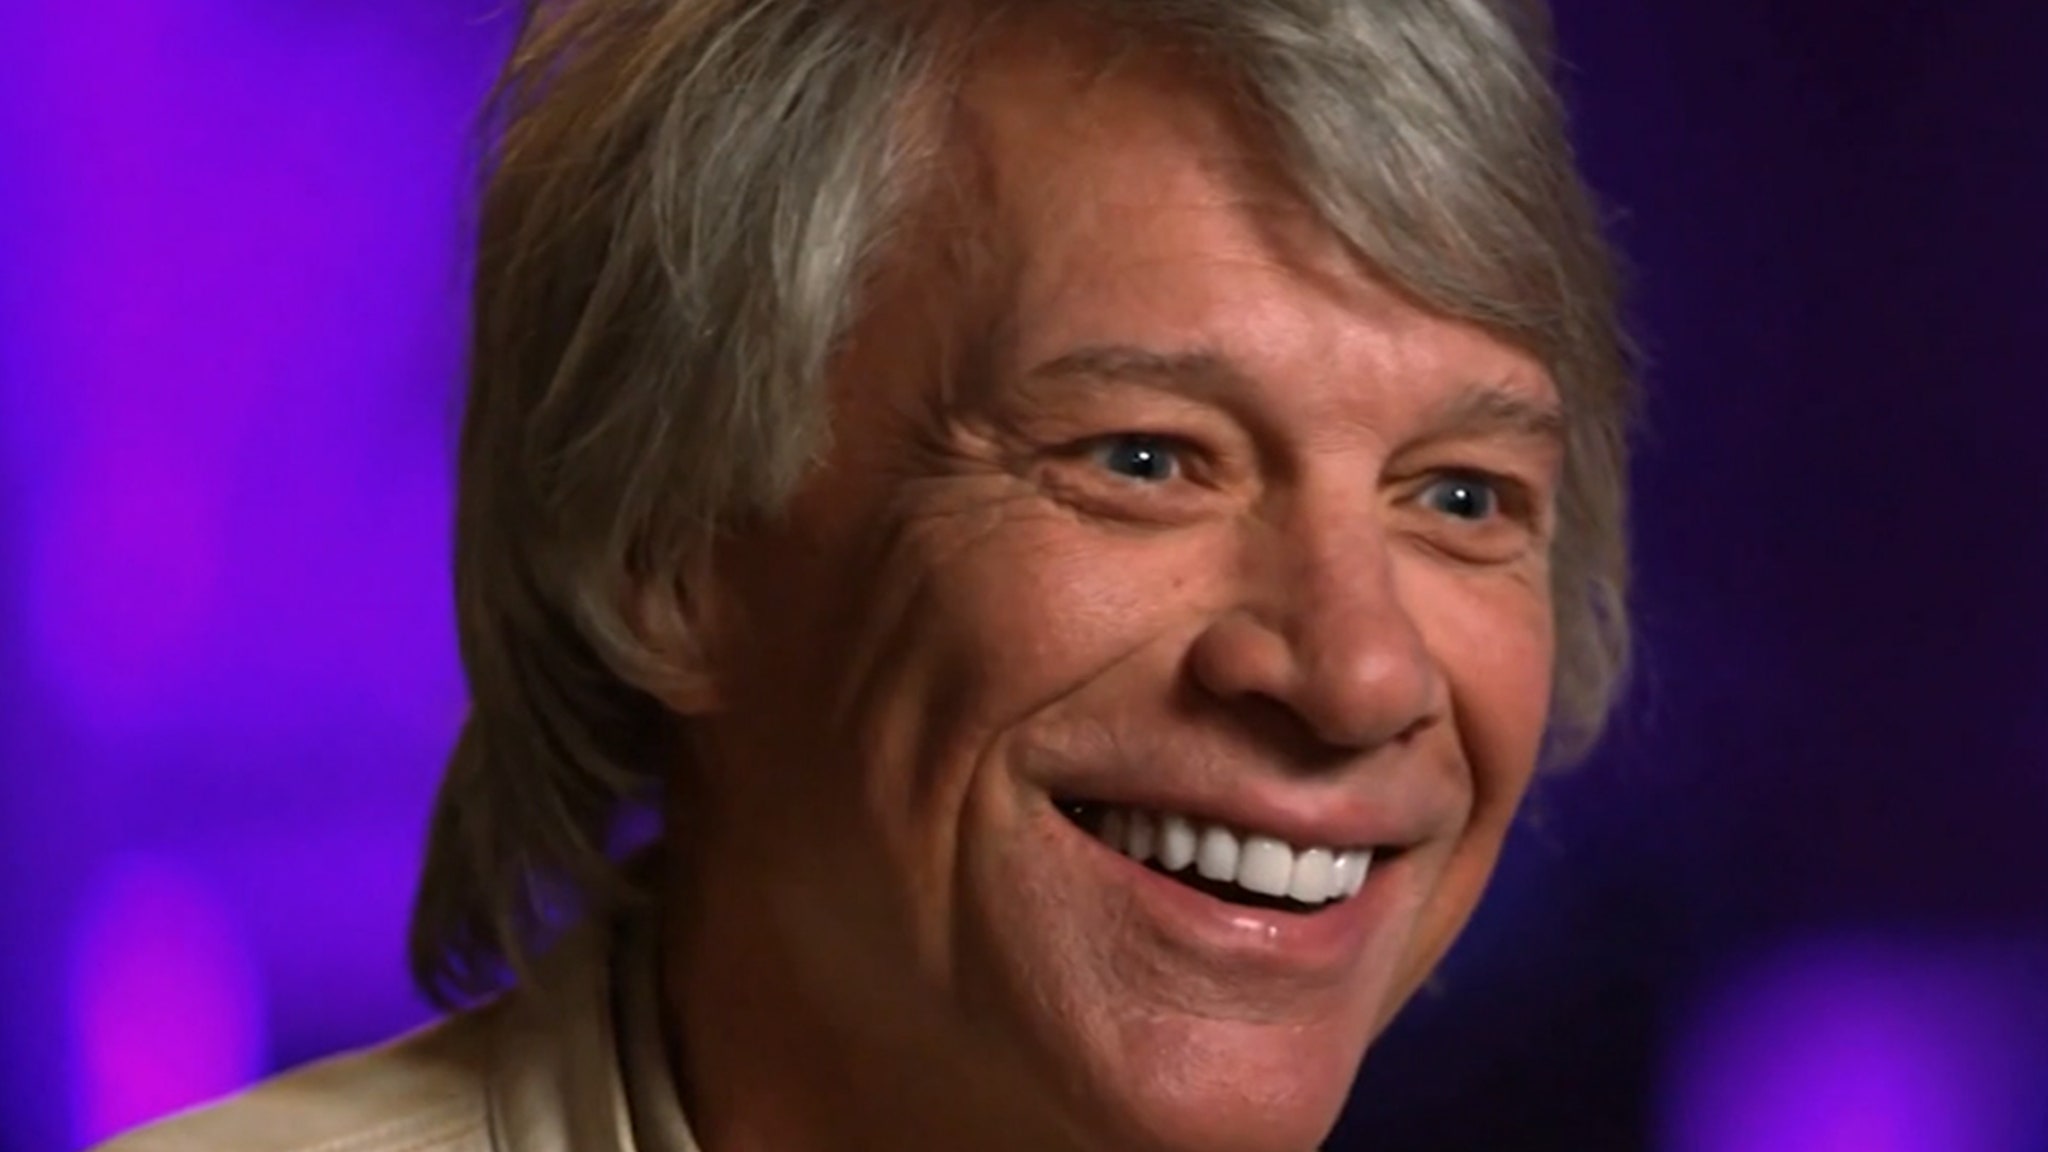 Jon Bon Jovi zegt dat hij tijdens de begindagen van Rockstar “wegkwam met moord”.